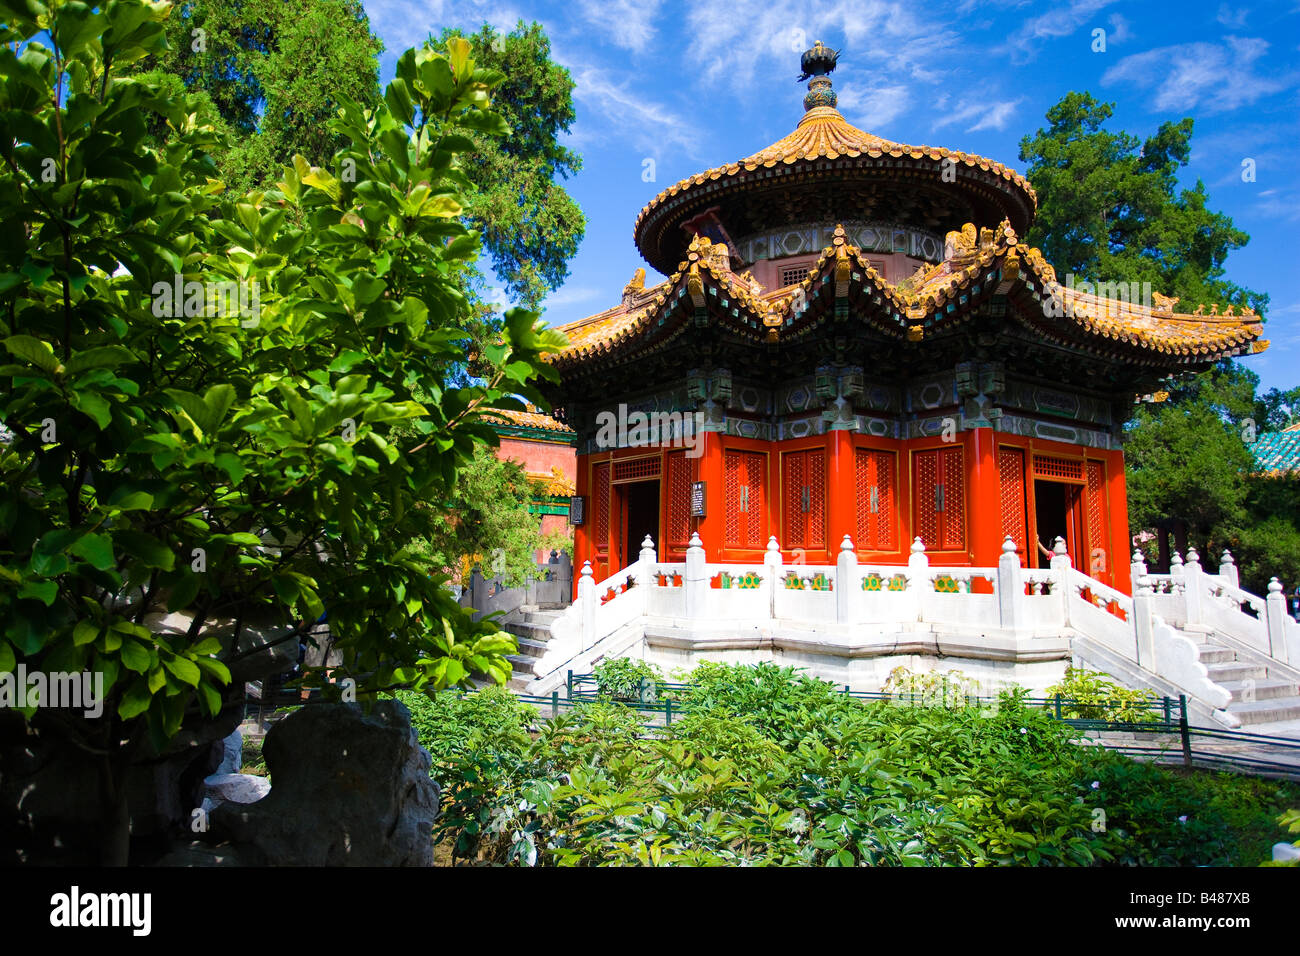 Chine Pékin Cité Interdite Imprerial pavillon du jardin de l'Imperial Gardens Yuhuayuan Banque D'Images